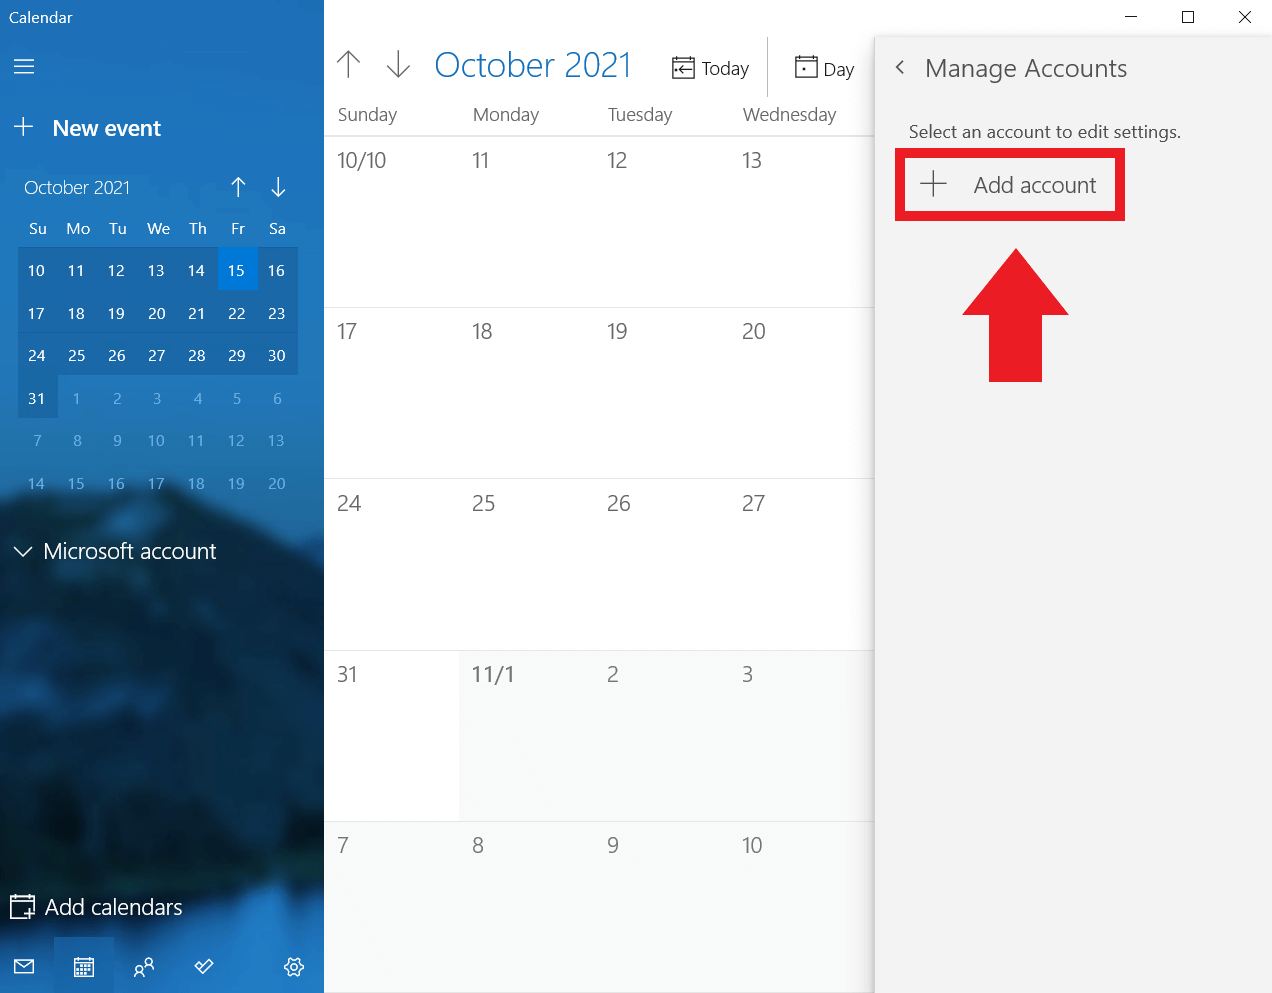 Windows Calendar: “Add account”